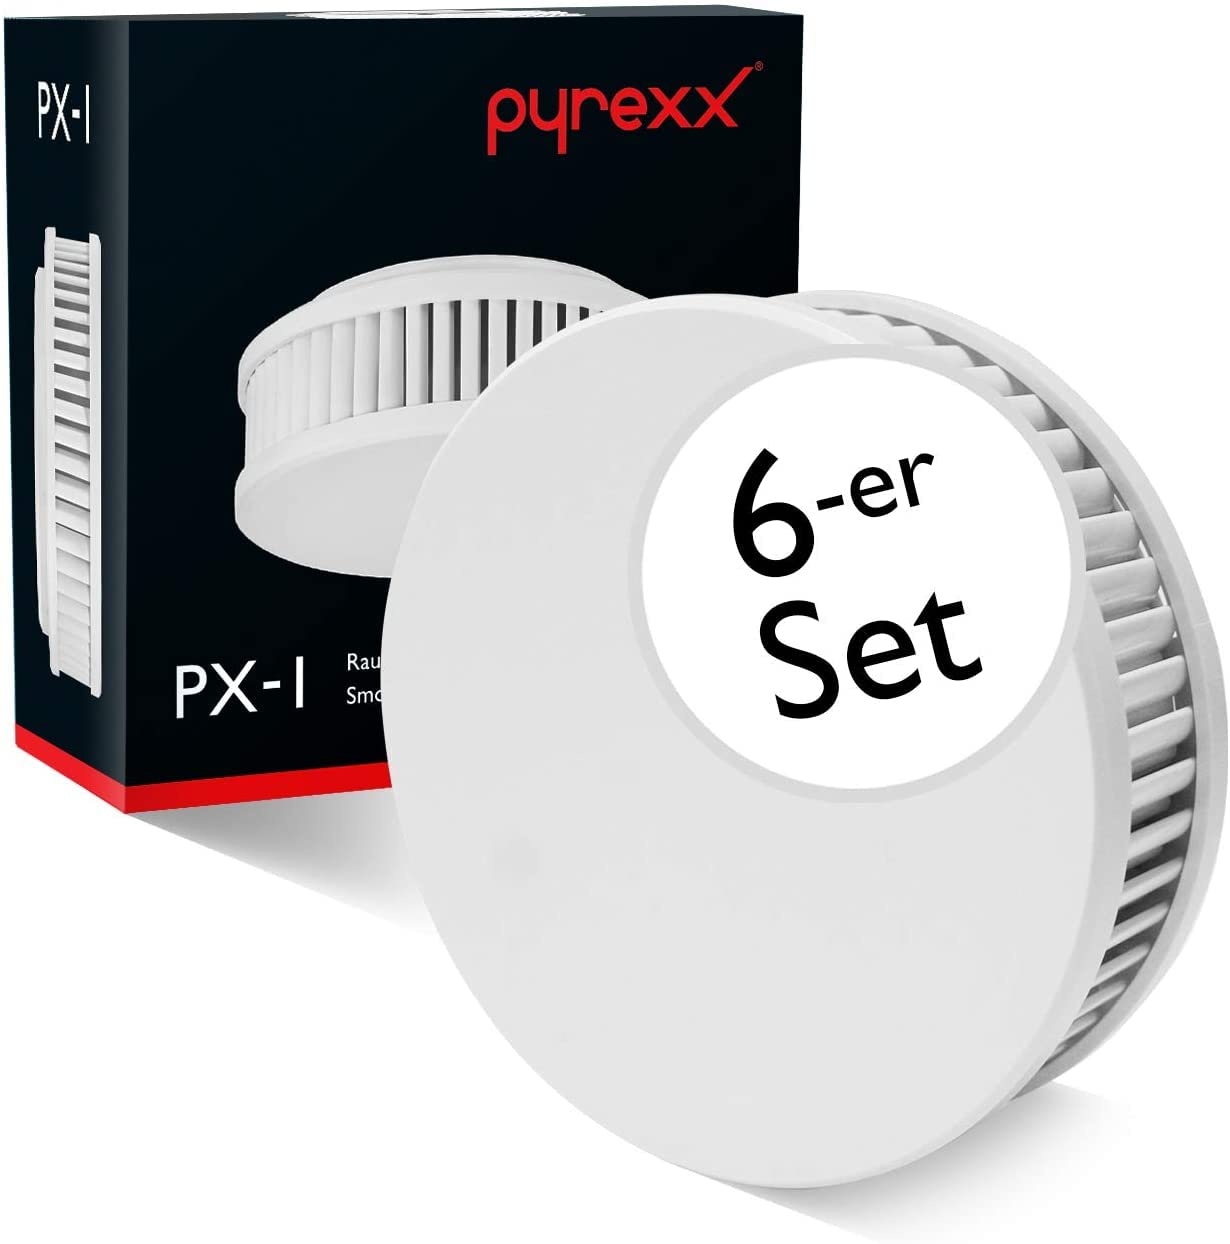 Pyrexx PX-1 • 6 Stück • Rauchmelder 10 Jahre Batterie mit Magnet-Halterung • ohne Bohren und LED-Blinken • Zertifiziert nach Q-Label • 6-er Set • Weiß